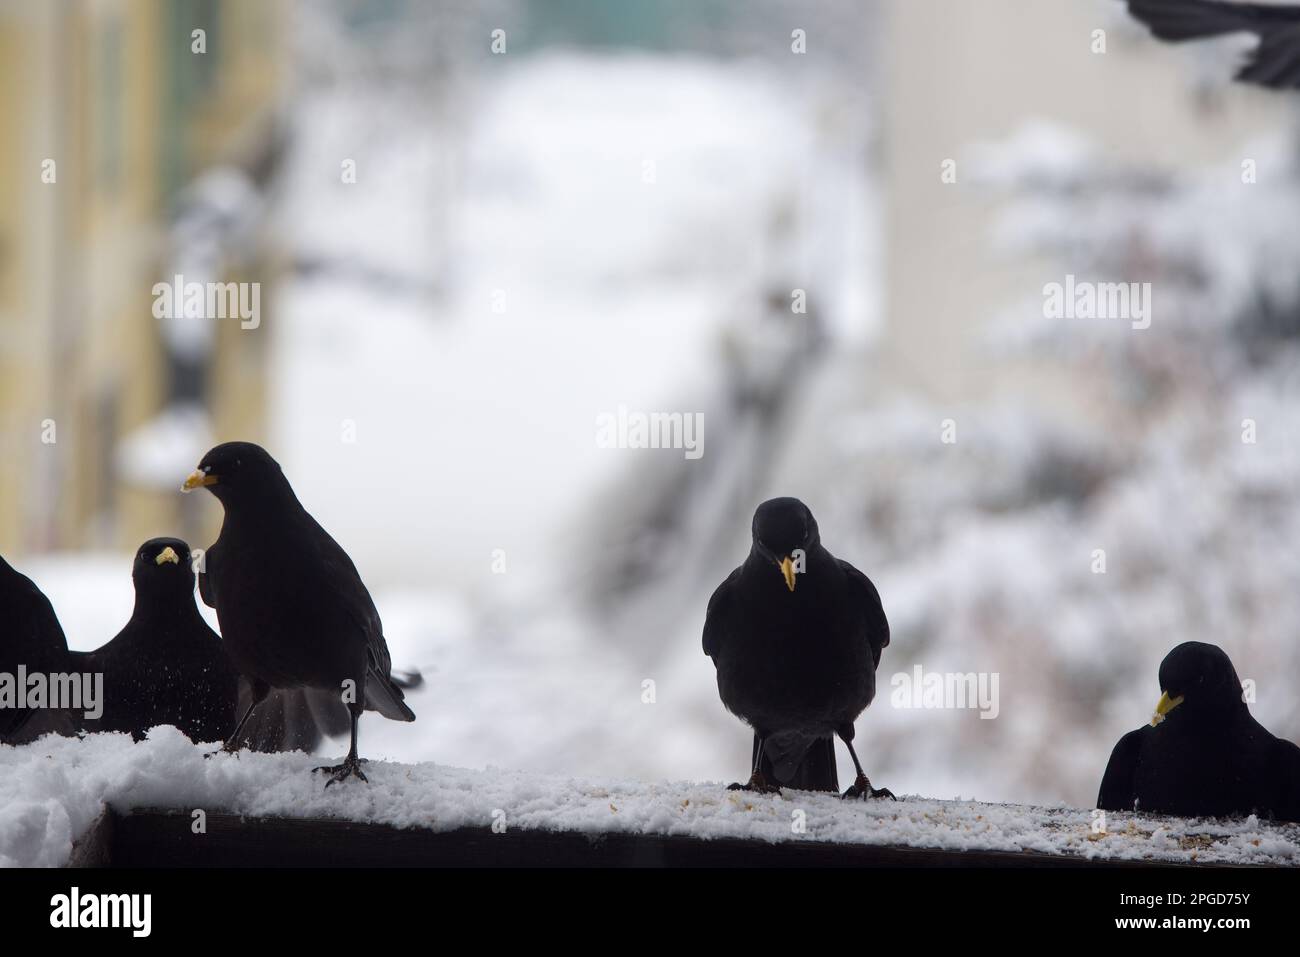 un gruppo di gracchi alpini si avvicina alla ricerca di cibo, uccelli neri sul balcone di una casa si nutrono Stock Photo